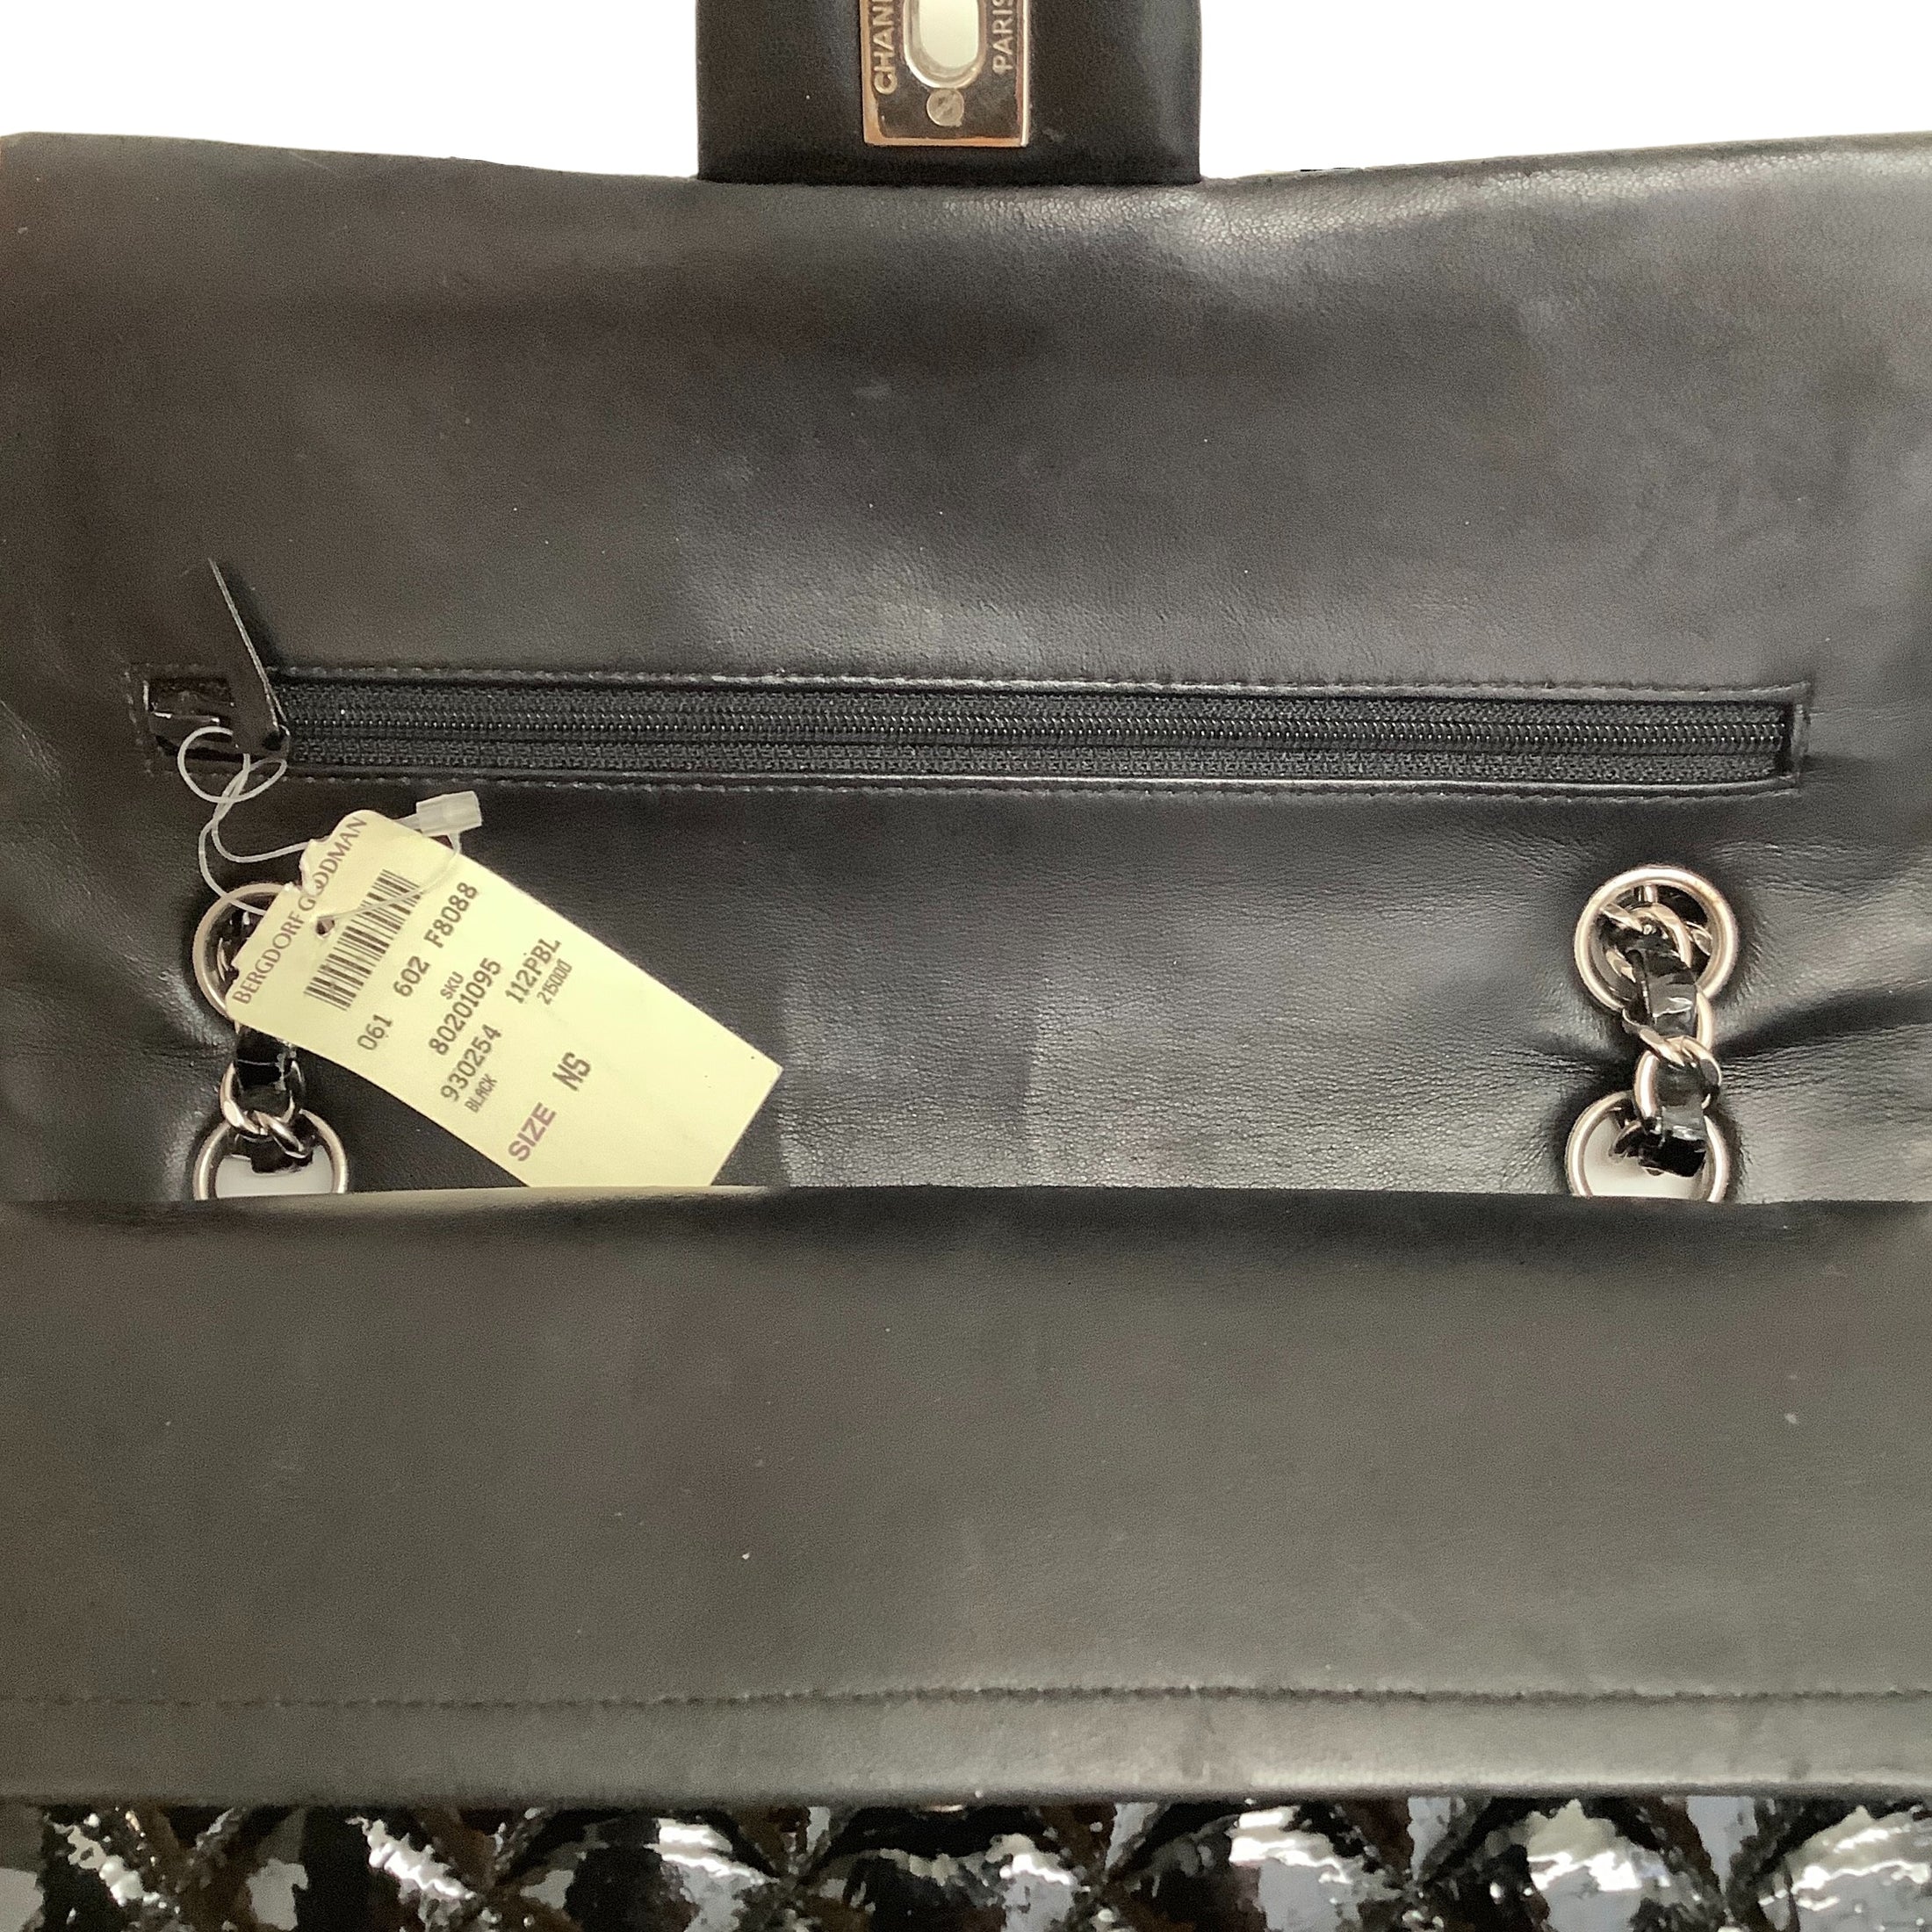 Chanel Double Flap Black Patent Leather Shoulder Bag